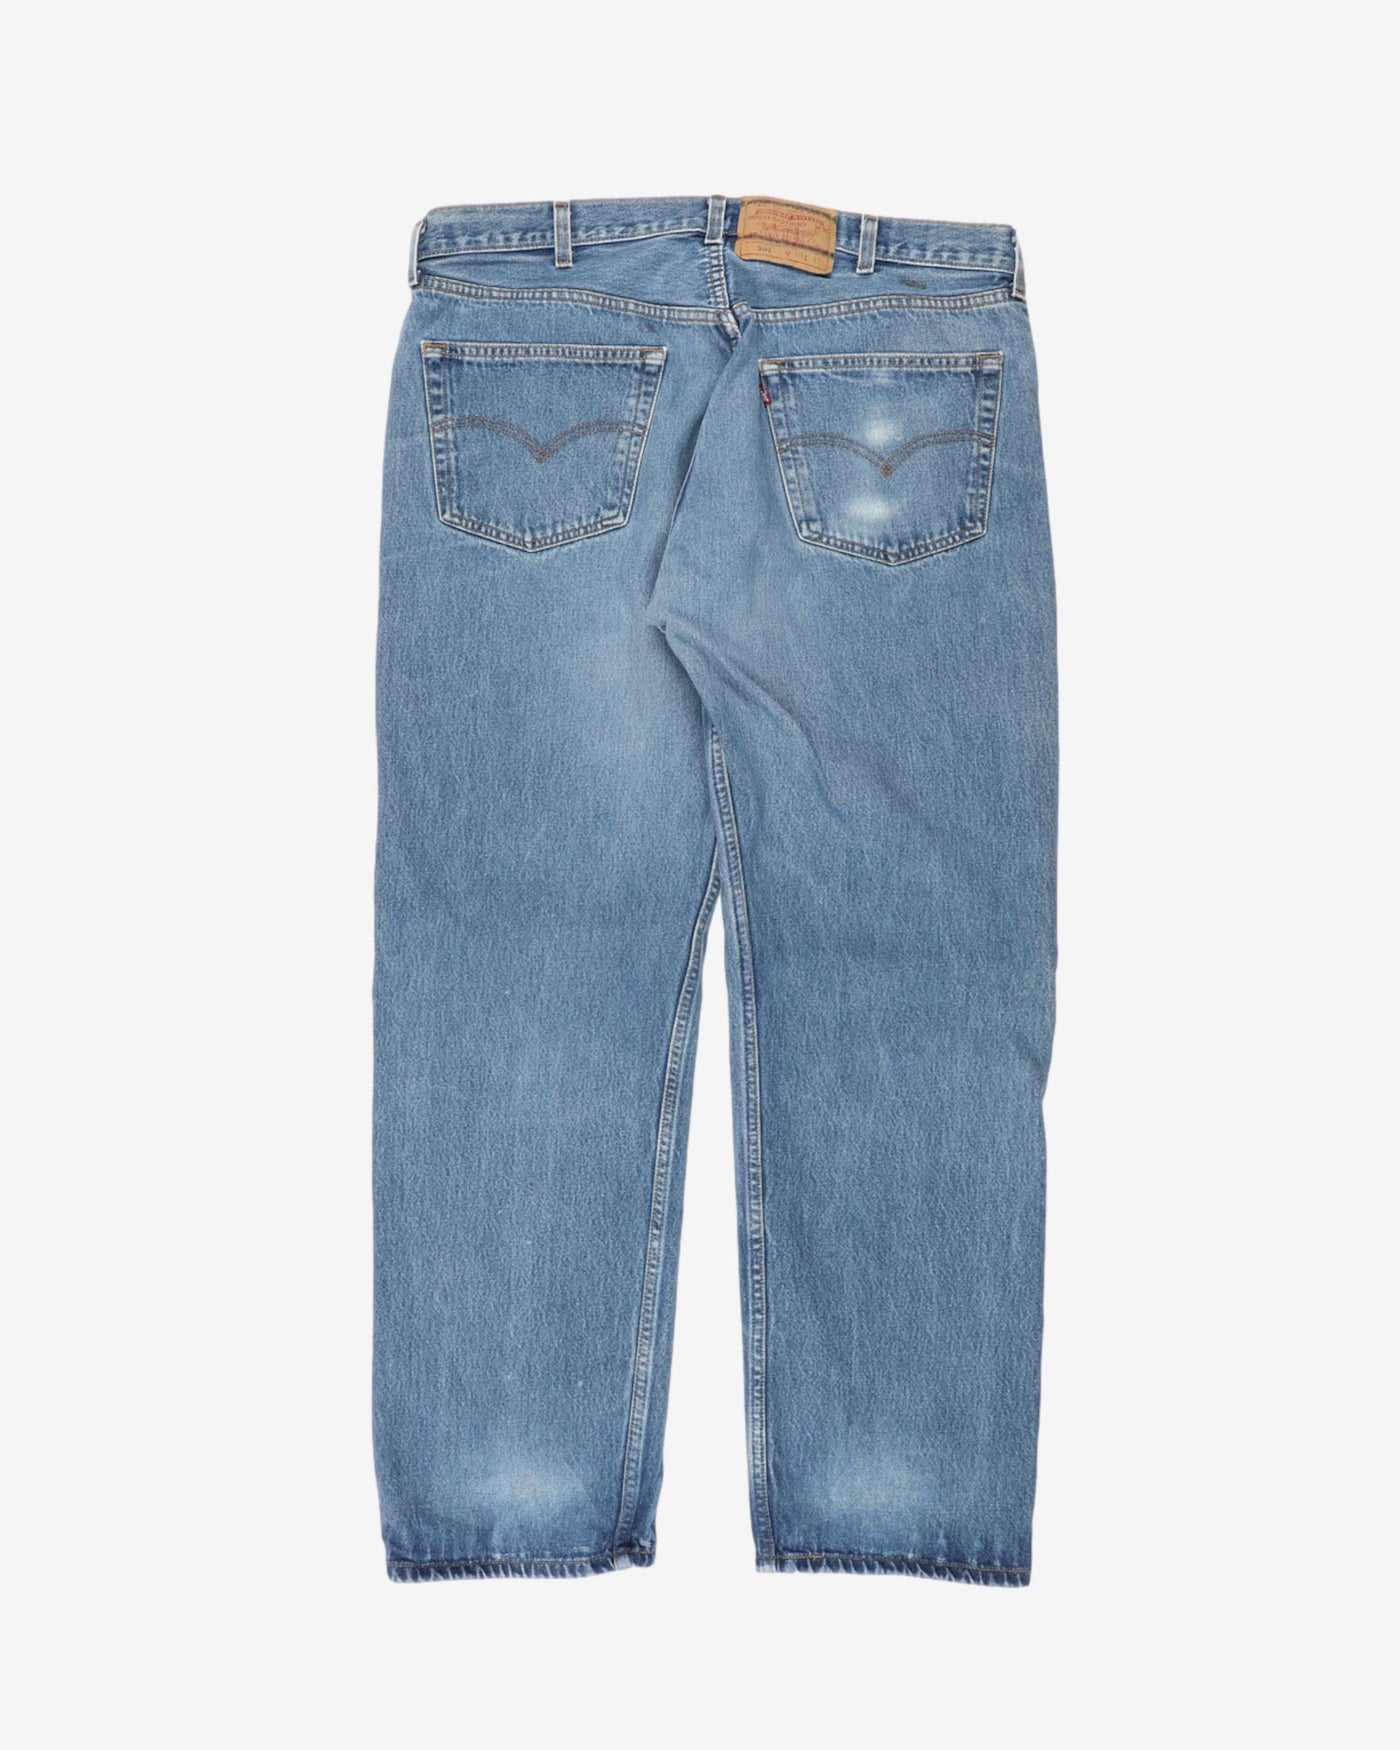 Levi's Jeans 501 Worn Blue Denim - W40 L29